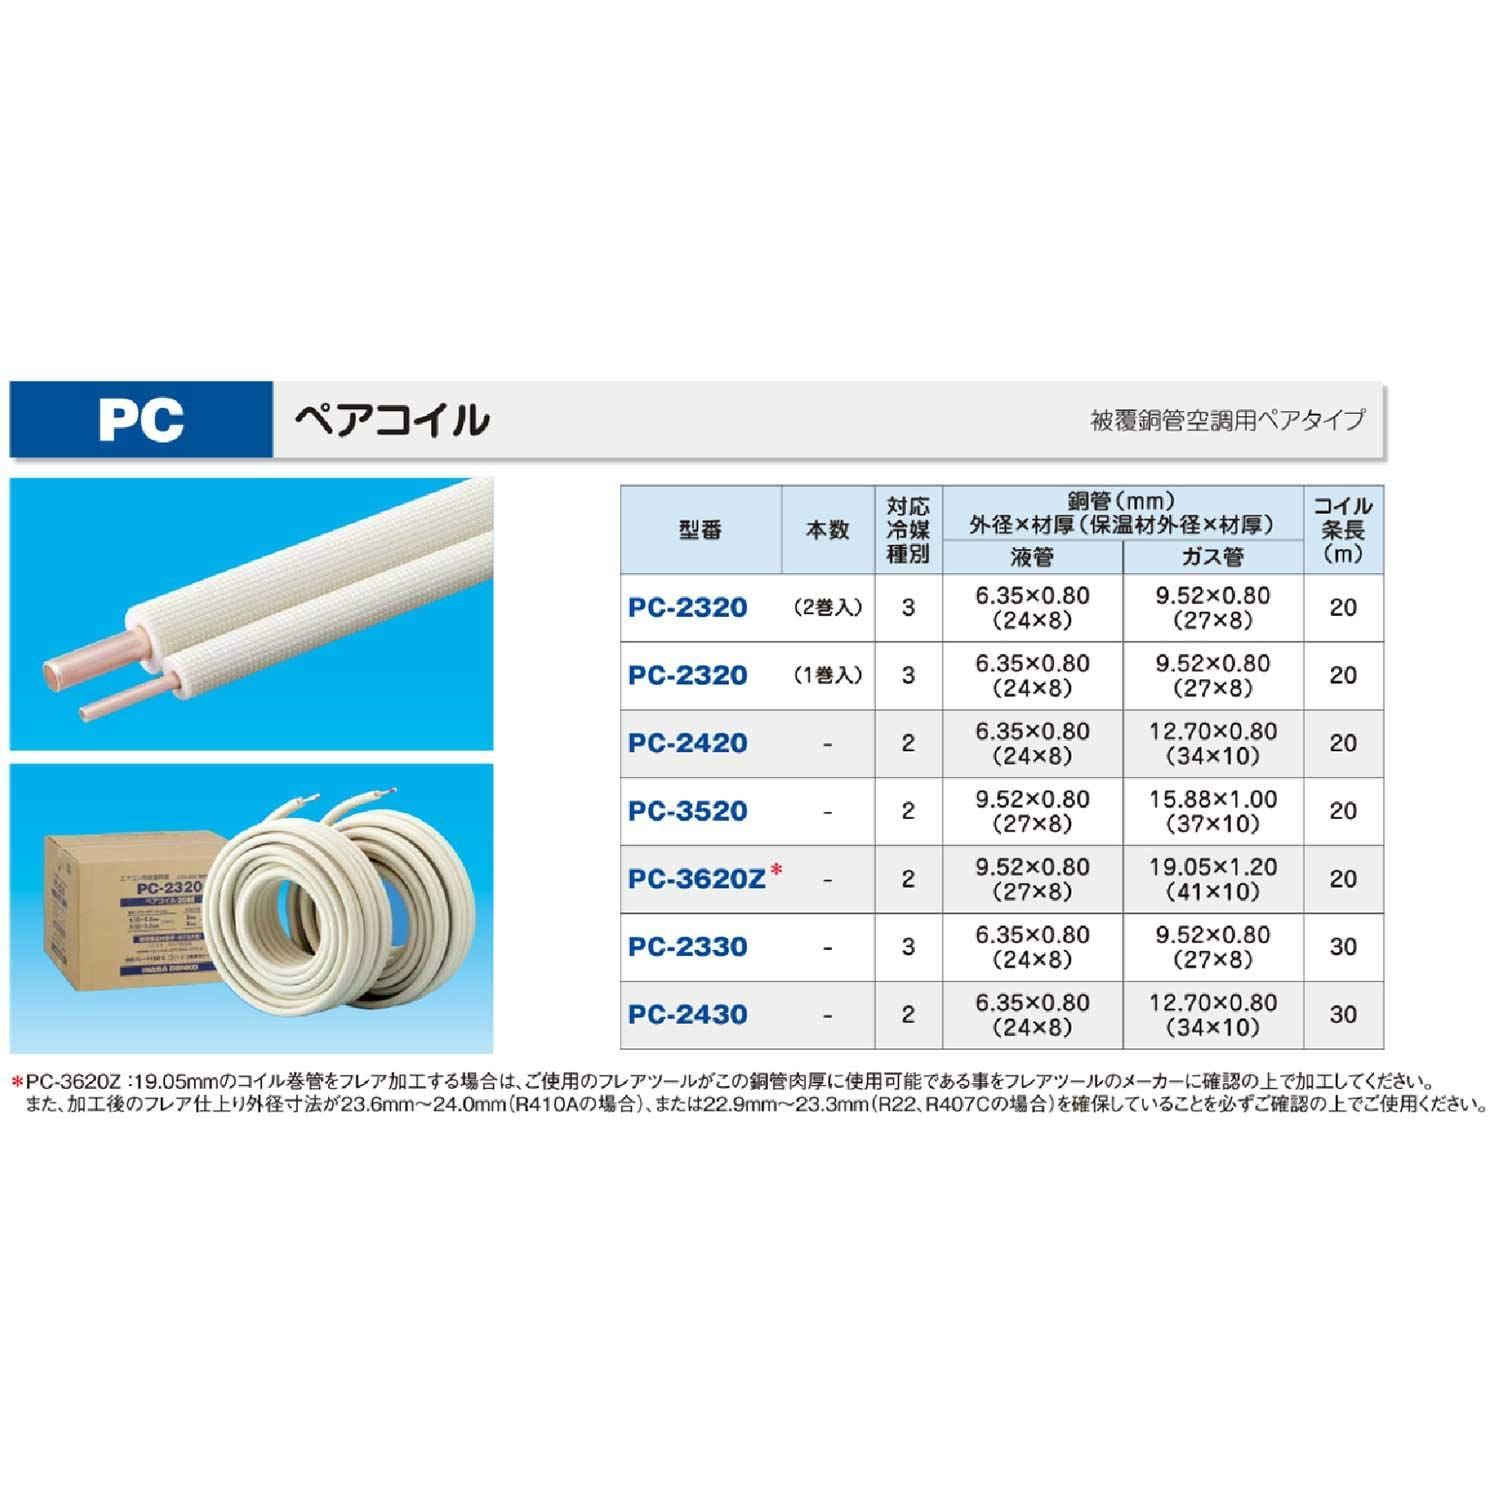 因幡電工 PC-2420-10H-KHE 冷媒管-